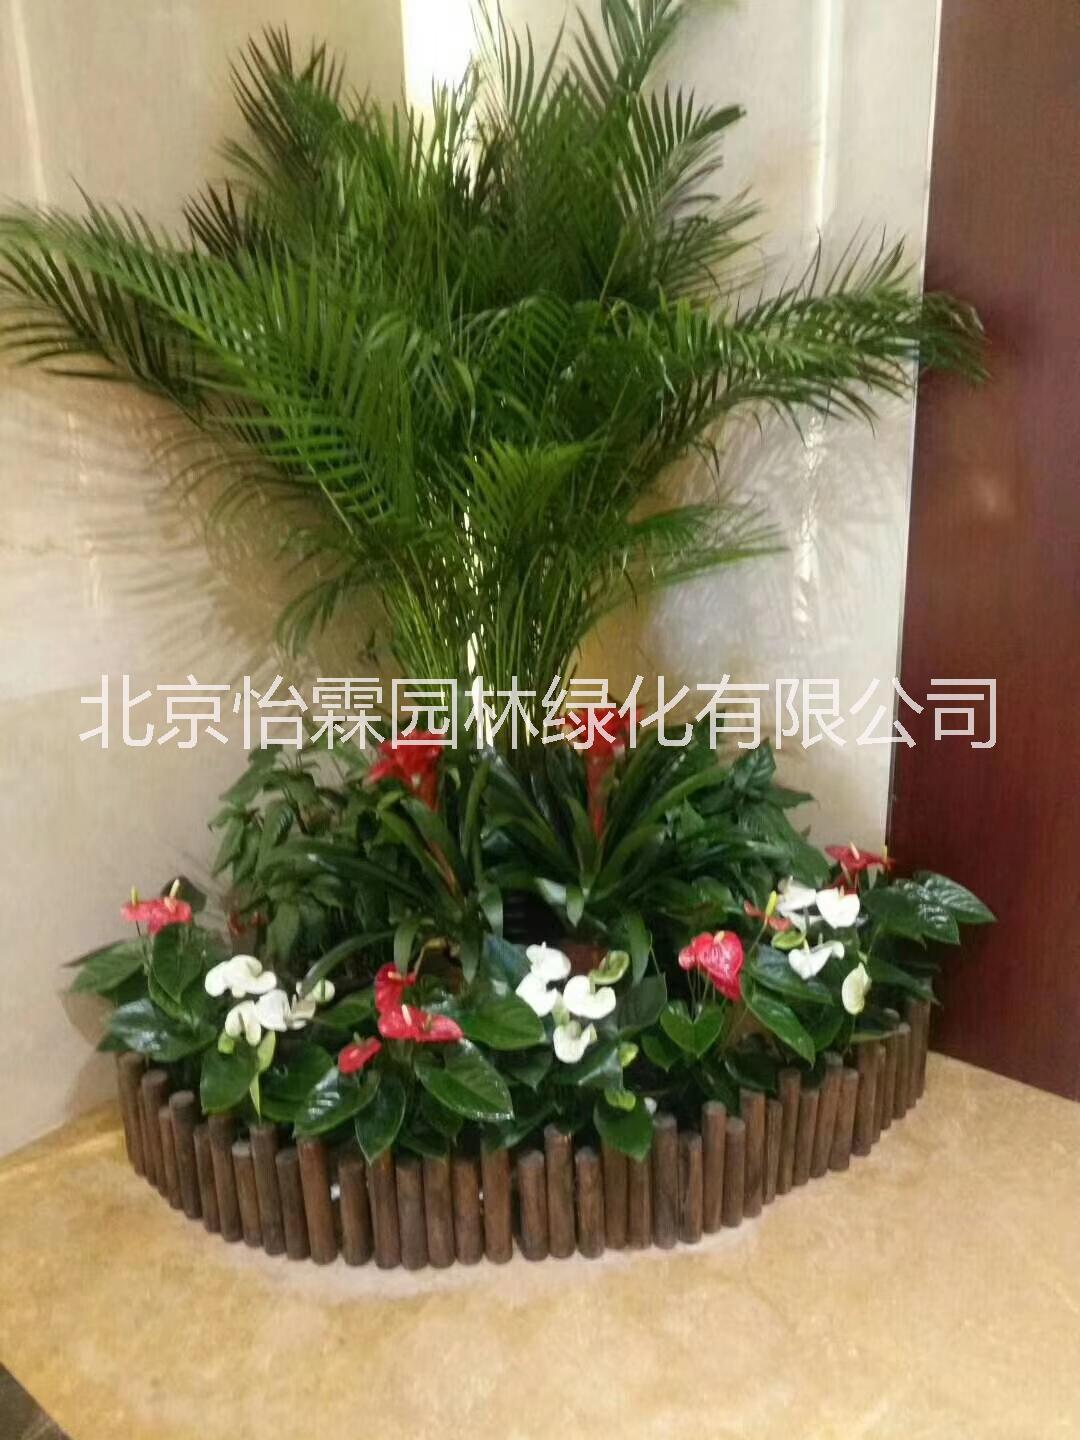 北京绿植租赁 北京绿植租赁公司 北京绿植花卉租赁公司